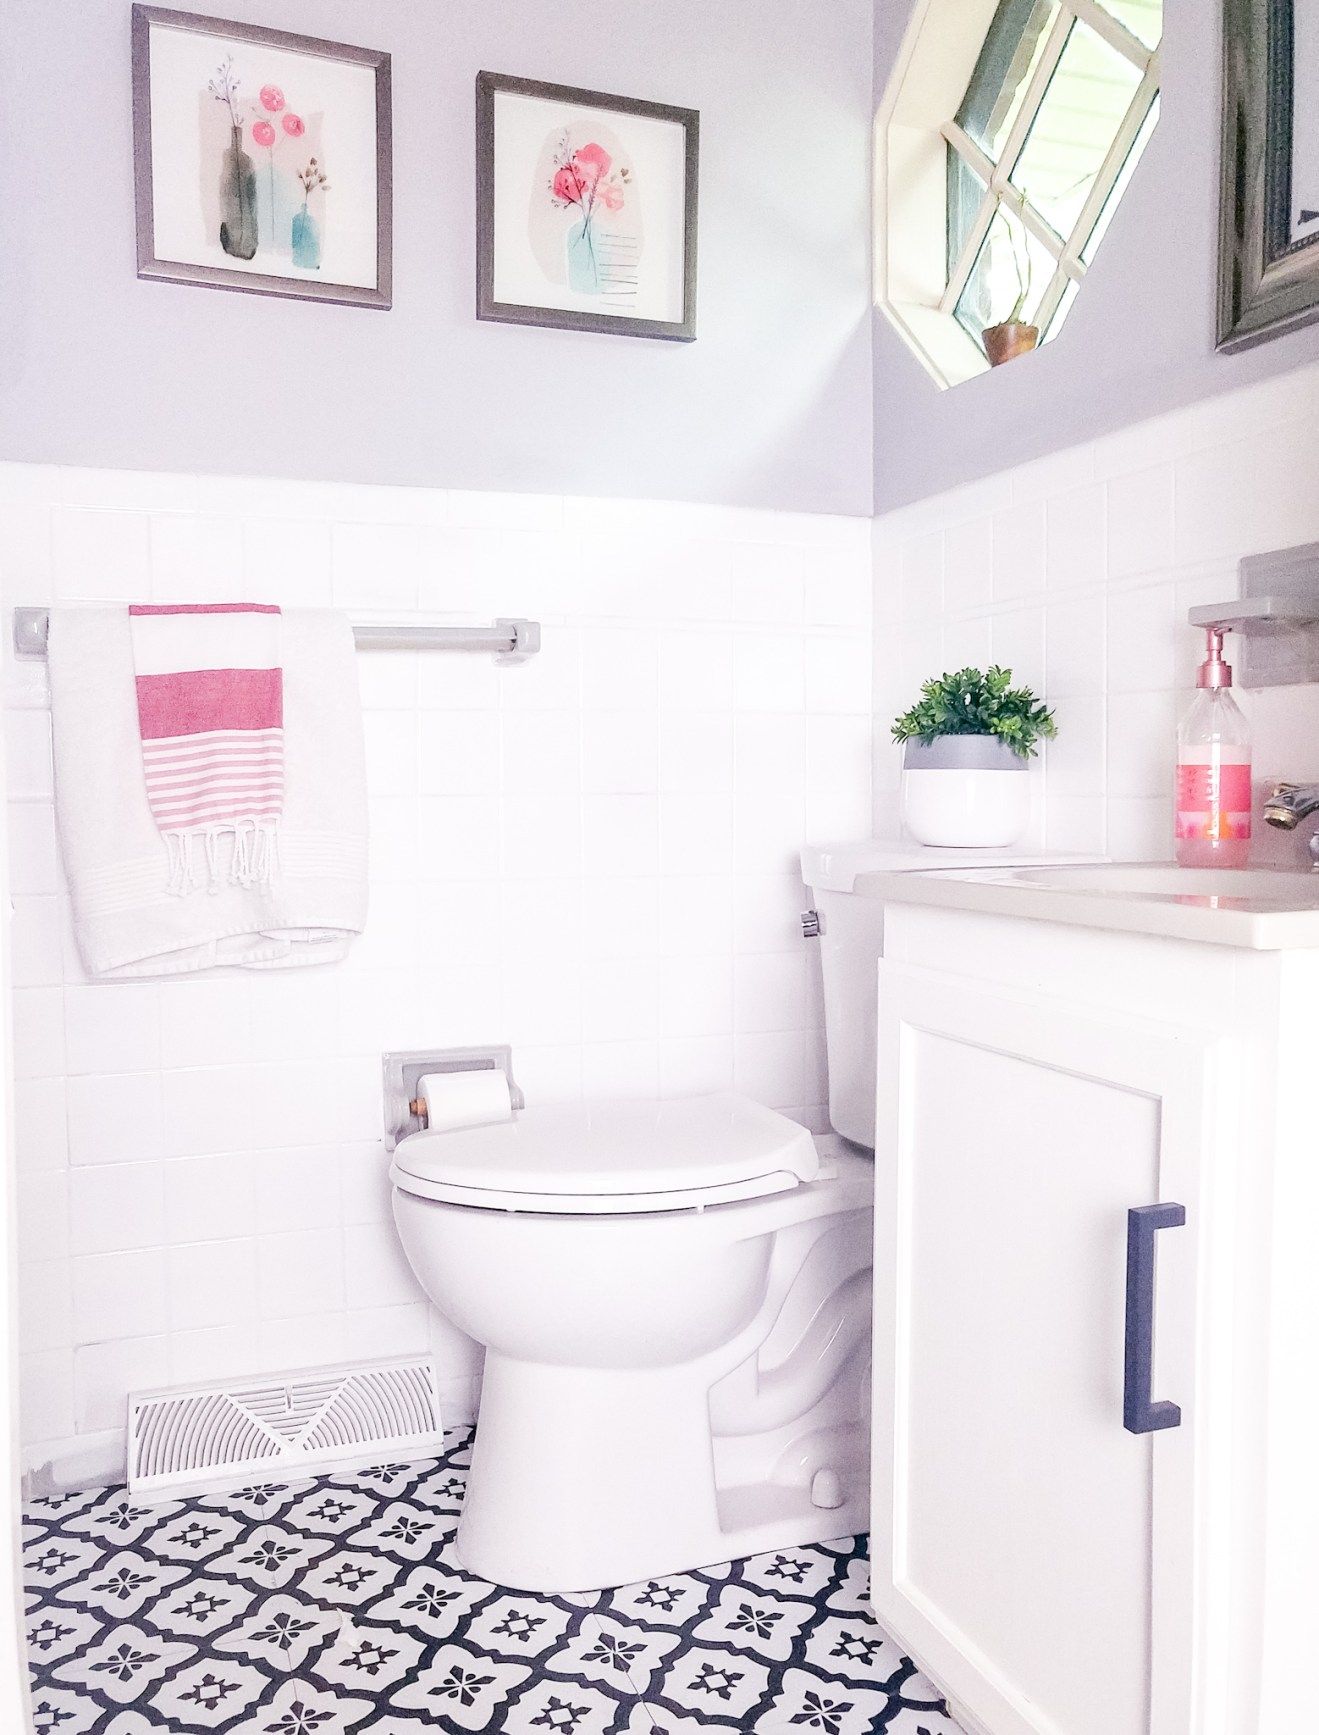 img/how-to-paint-bathroom-tile-white.jpg